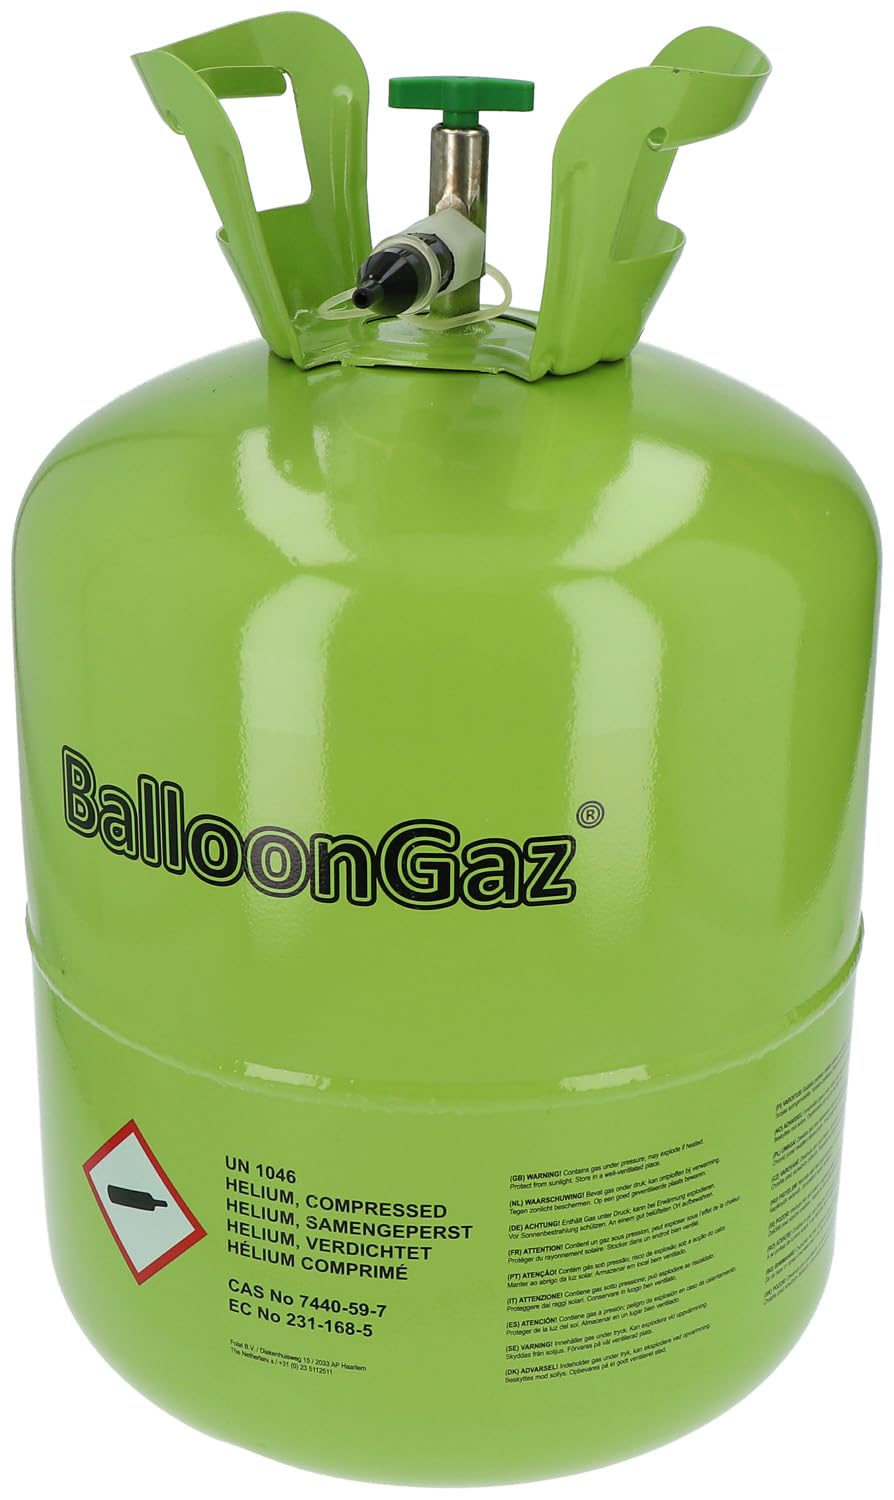 Folat 25203 BallonGaz Helium – 360 Liter Ballongas mit Füllventil für 50 Ideal für Geburtstage, Party, Hochzeit | Einweg Gasflasche aus recyclebarem Metall | Gas, Luftballons, Folienballons, Grün